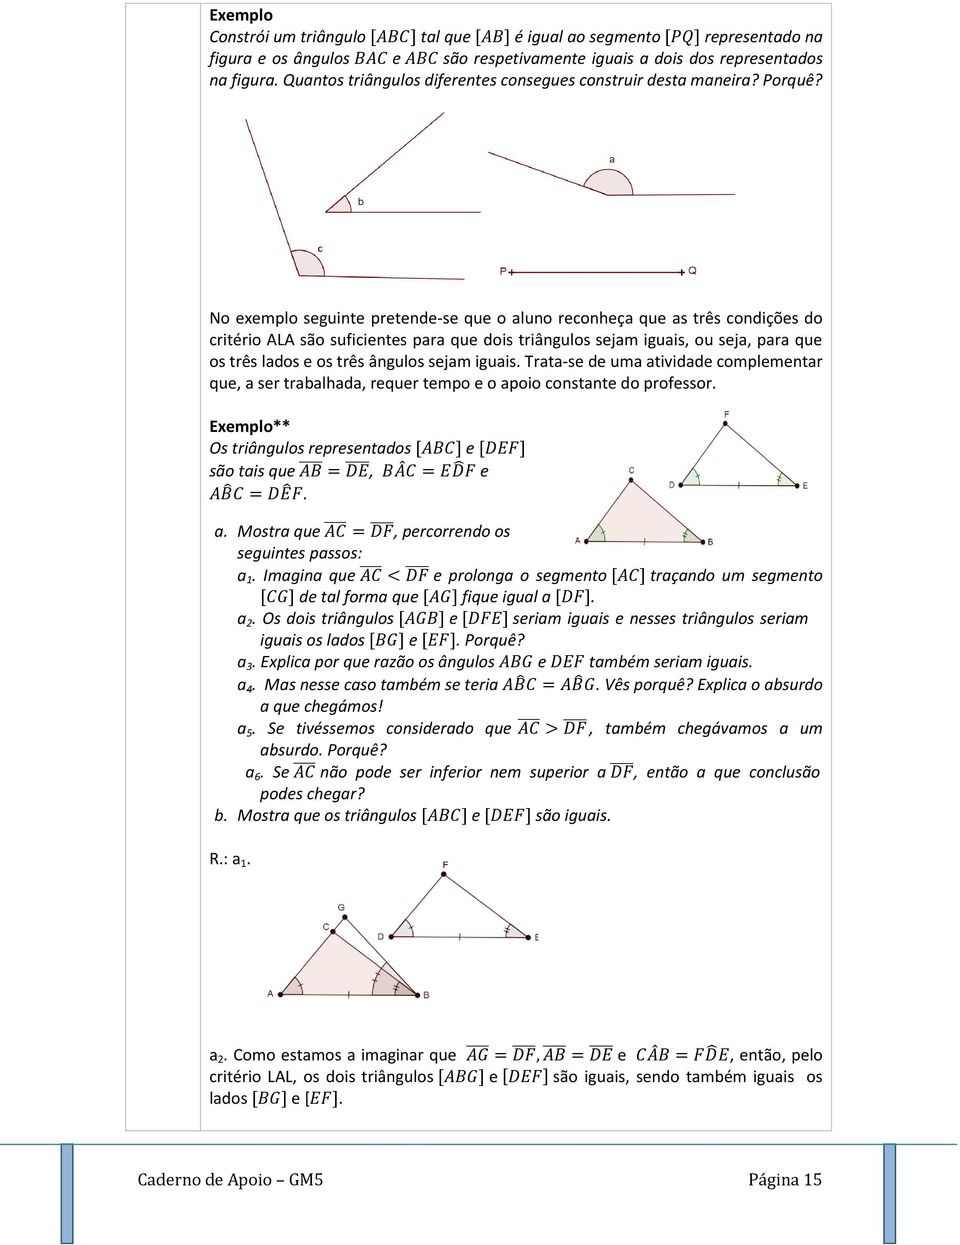 No exemplo seguinte pretende-se que o aluno reconheça que as três condições do critério ALA são suficientes para que dois triângulos sejam iguais, ou seja, para que os três lados e os três ângulos